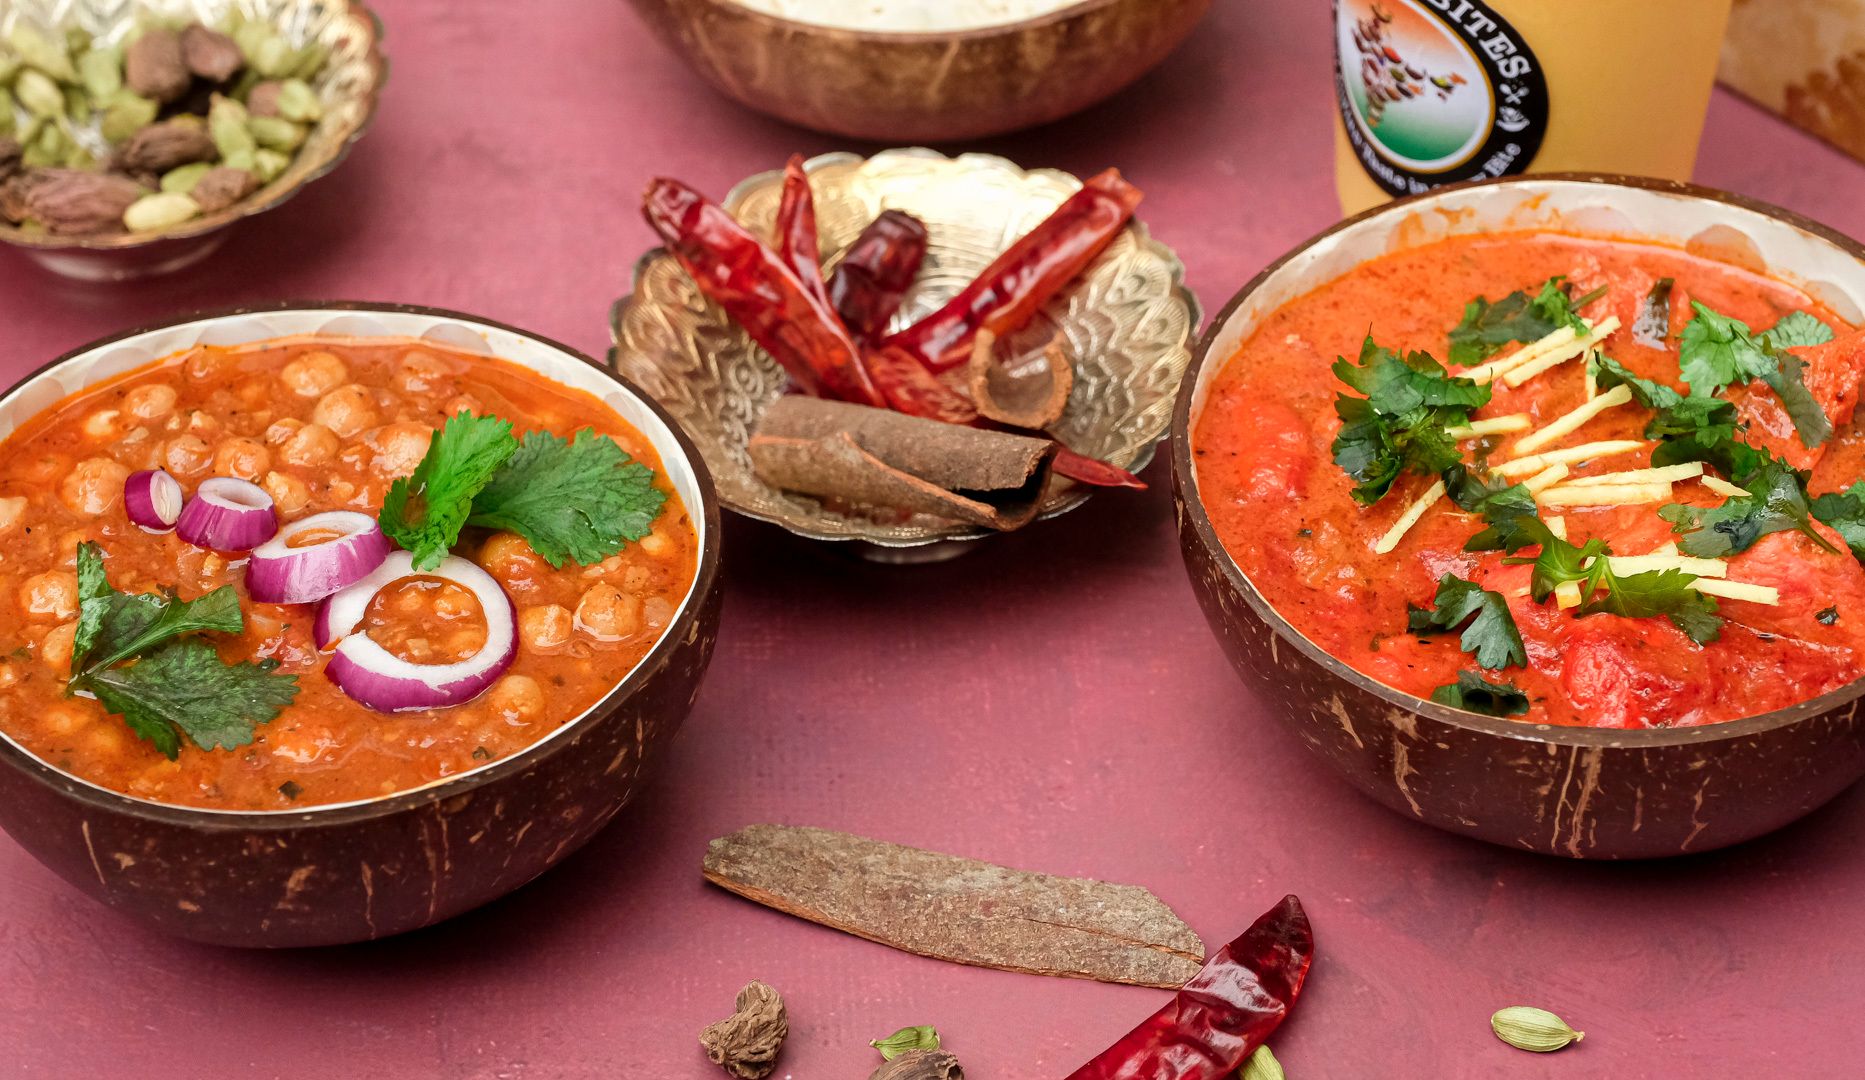 NYHED: Frit valg hos Indian Bites